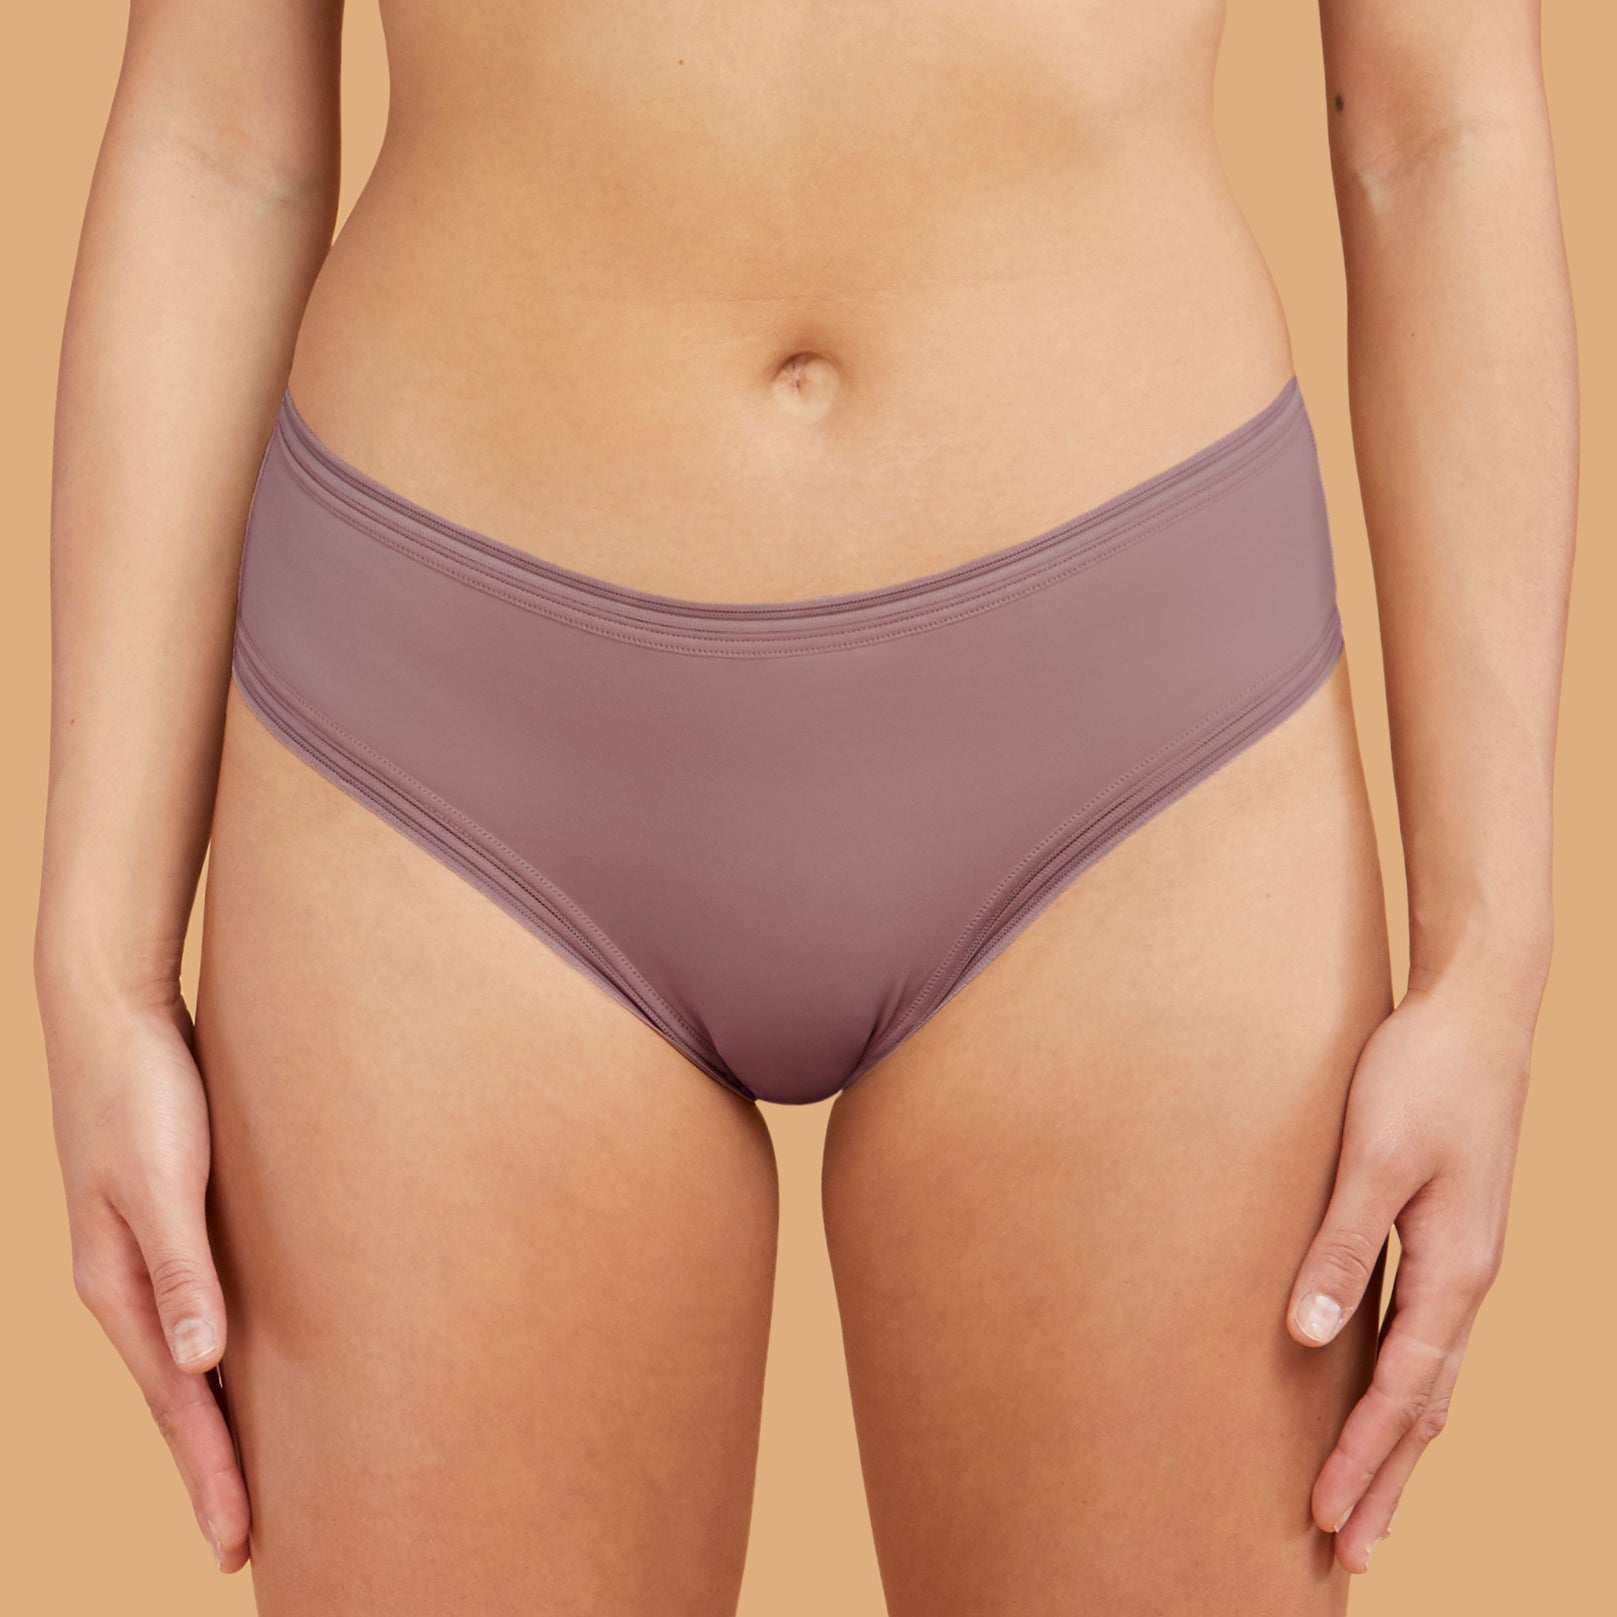 thinx cheeky period underwear - dusk in sizes xxs-4x undies